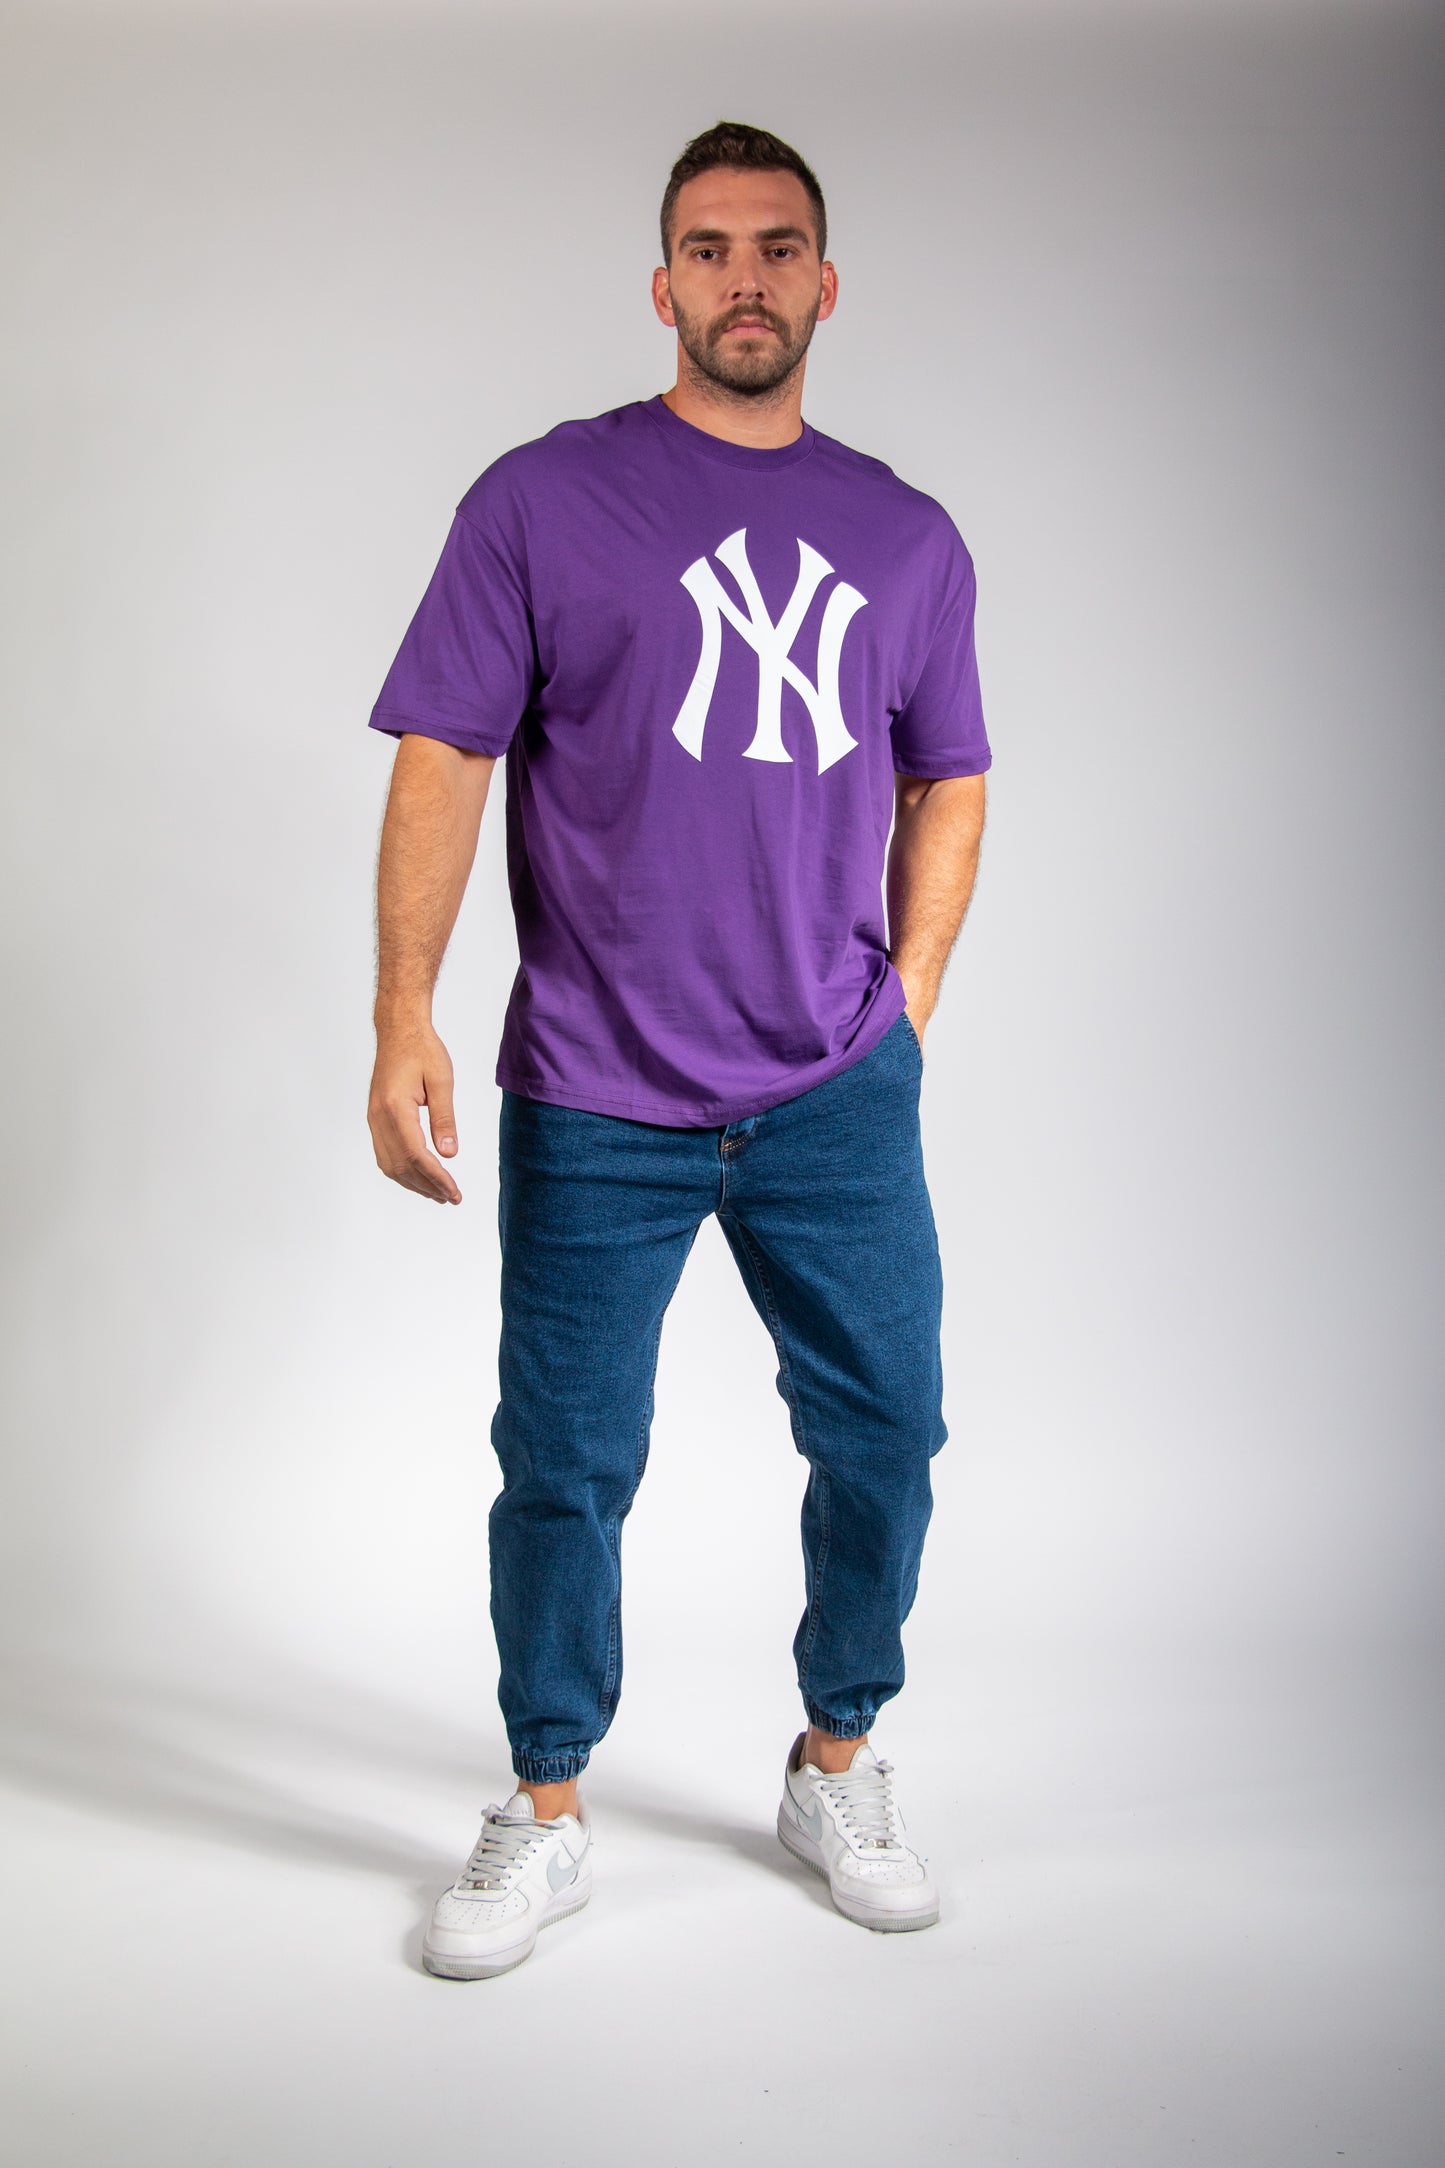 NY T-Shirt for men